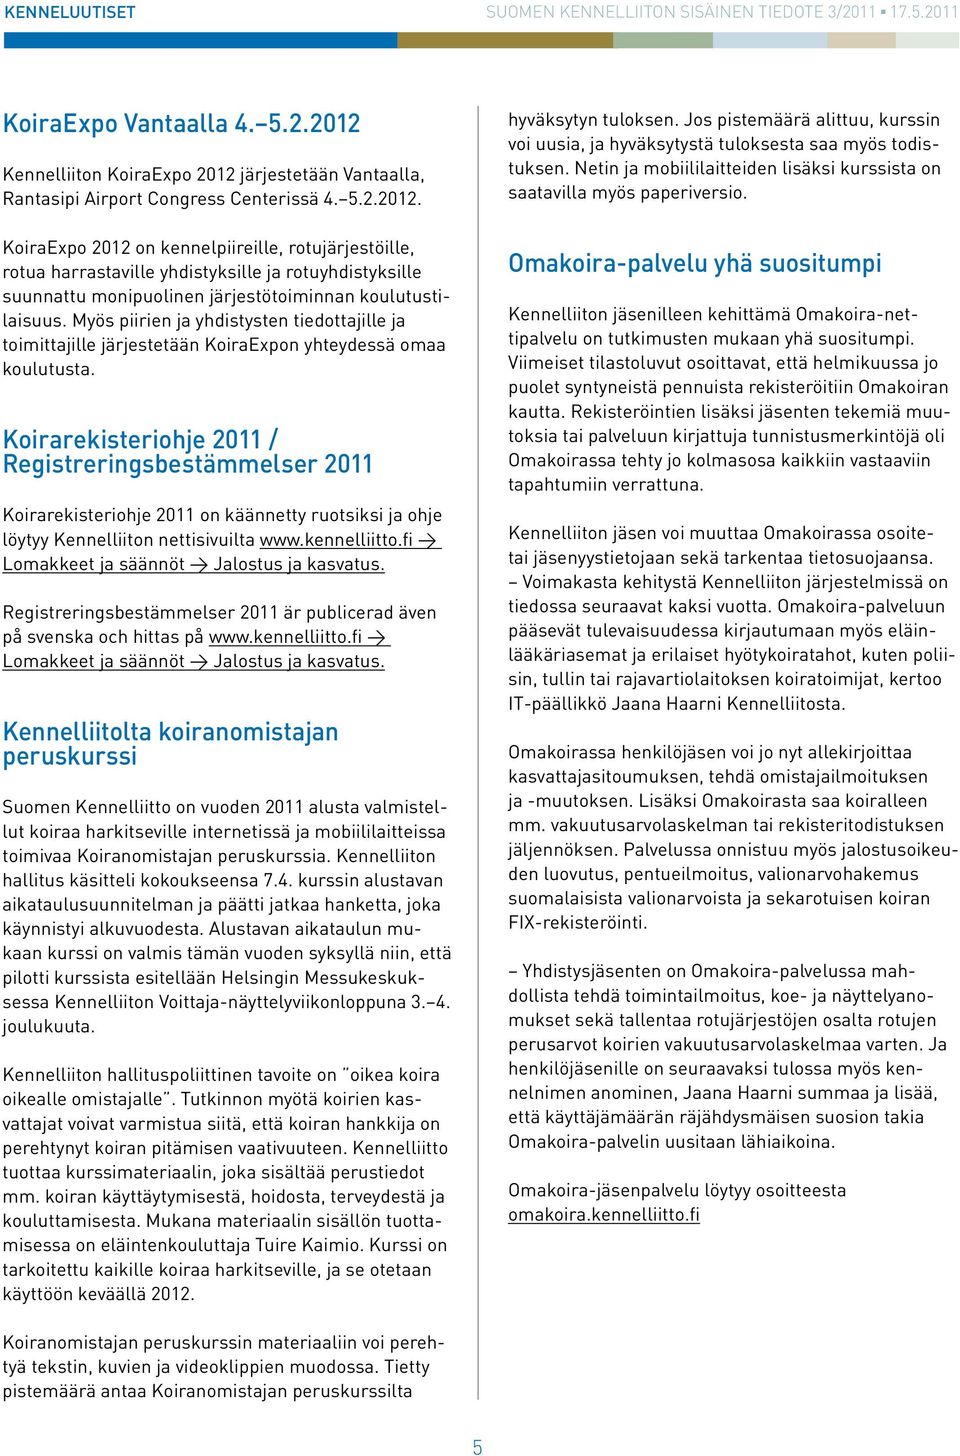 Koirarekisteriohje 2011 / Registreringsbestämmelser 2011 Koirarekisteriohje 2011 on käännetty ruotsiksi ja ohje löytyy Kennelliiton nettisivuilta www.kennelliitto.